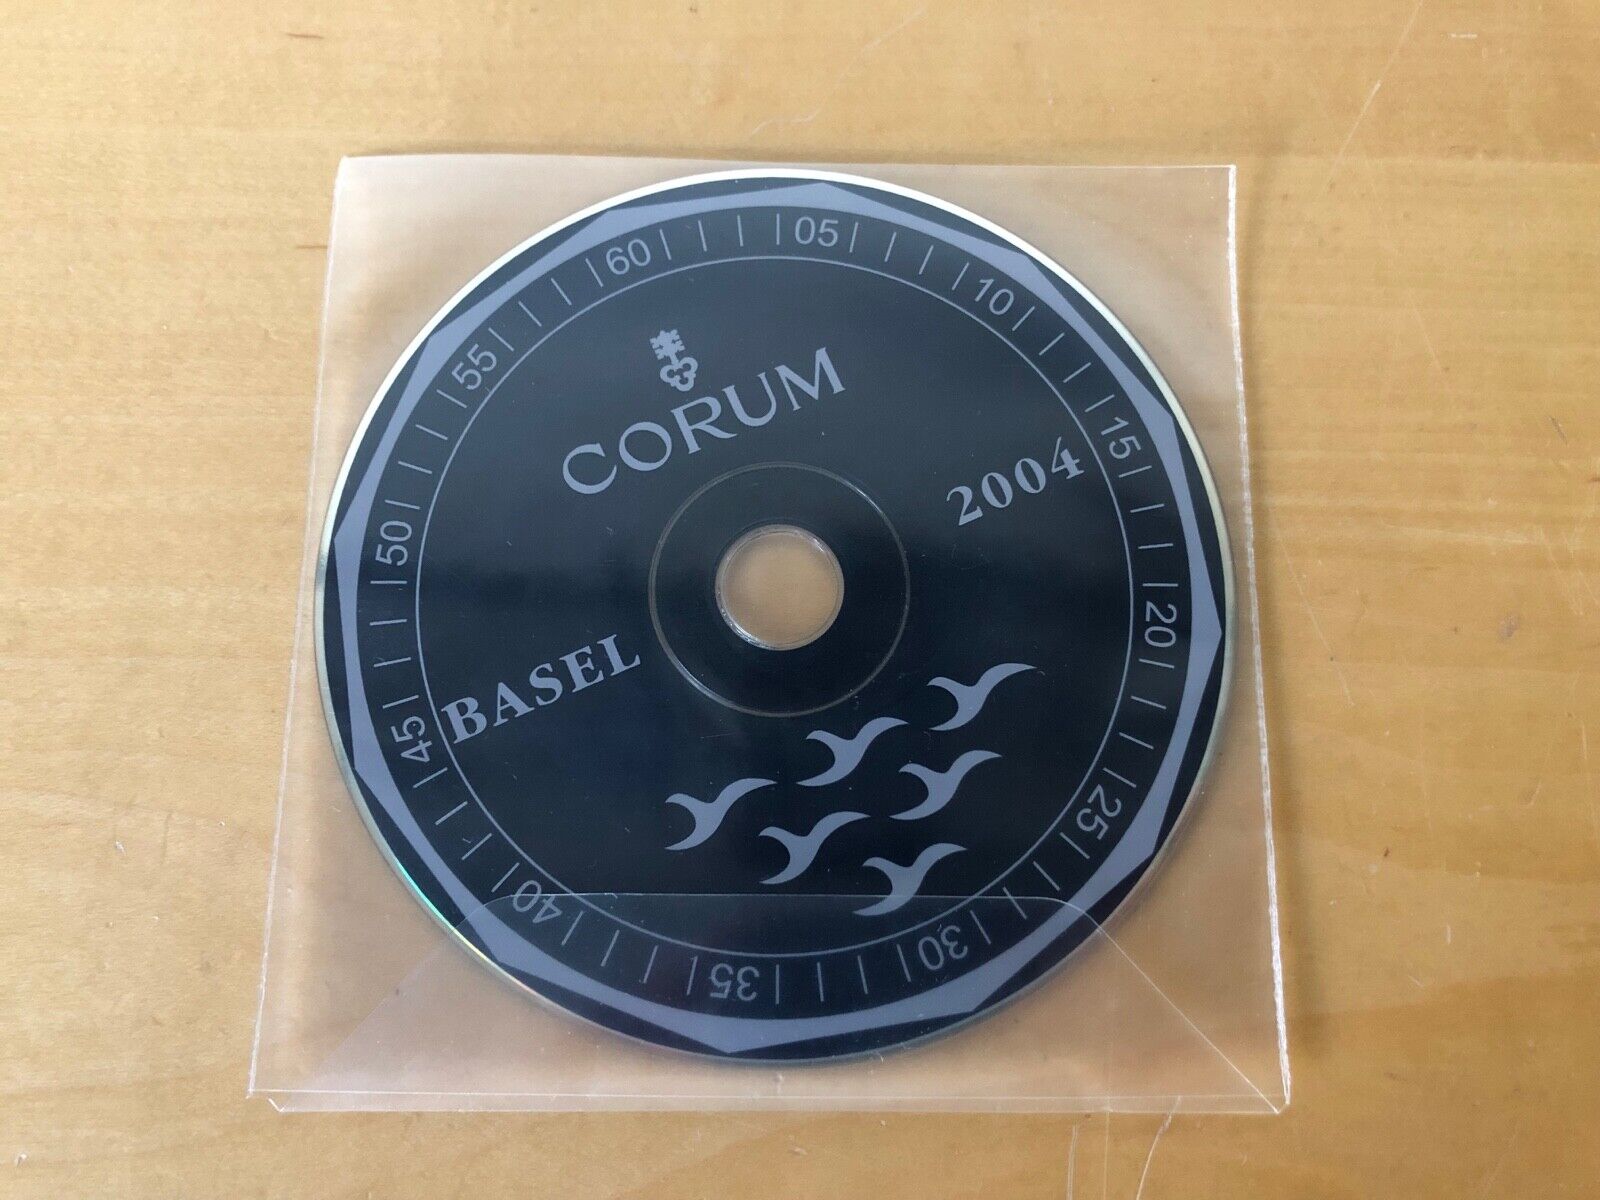 Press Release CD - Corum - Basel 2004 - Pour Collectionneurs